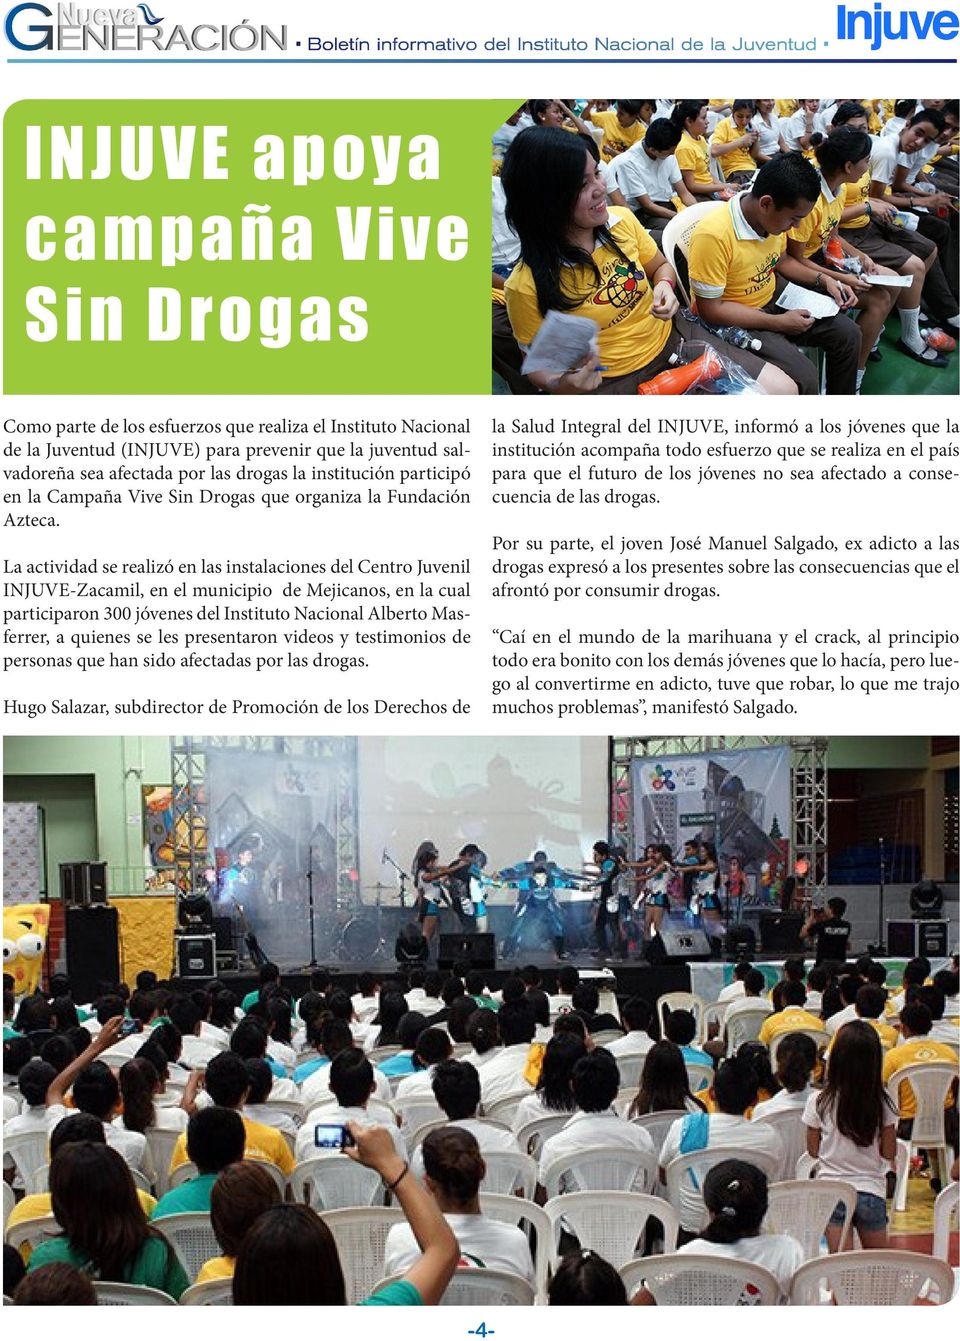 La actividad se realizó en las instalaciones del Centro Juvenil INJUVE-Zacamil, en el municipio de Mejicanos, en la cual participaron 300 jóvenes del Instituto Nacional Alberto Masferrer, a quienes